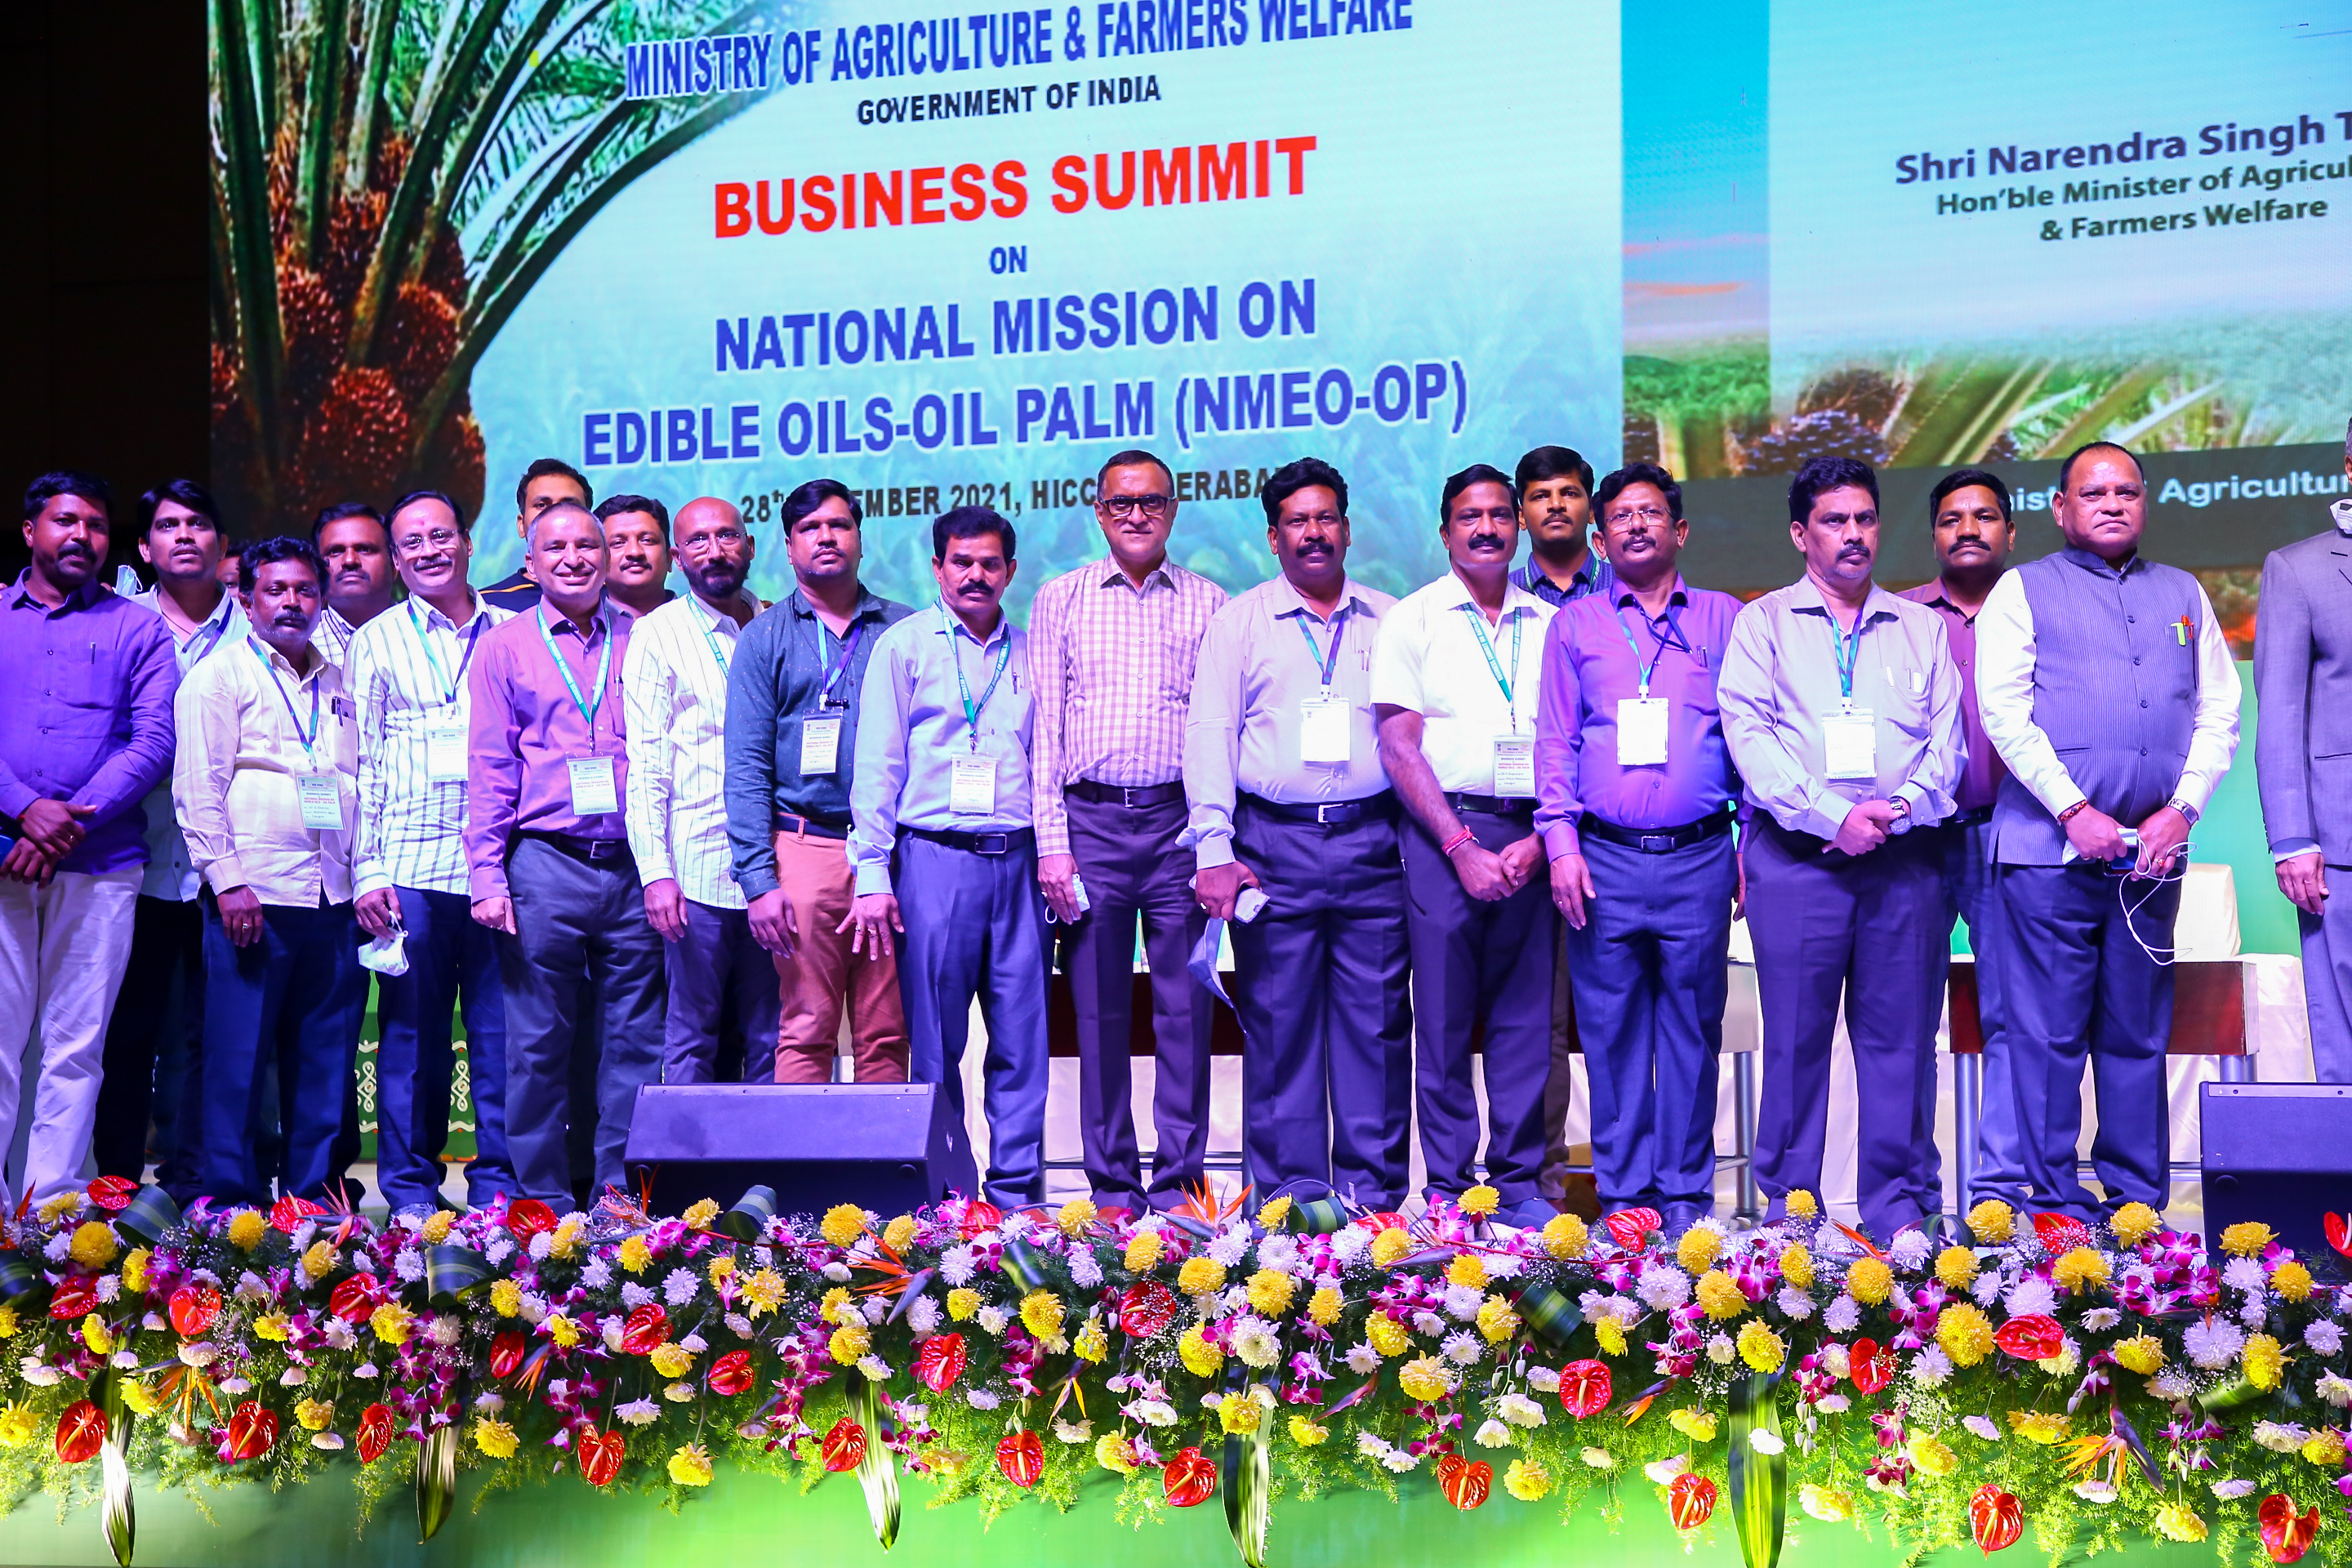 Business Summit in Hyderabad